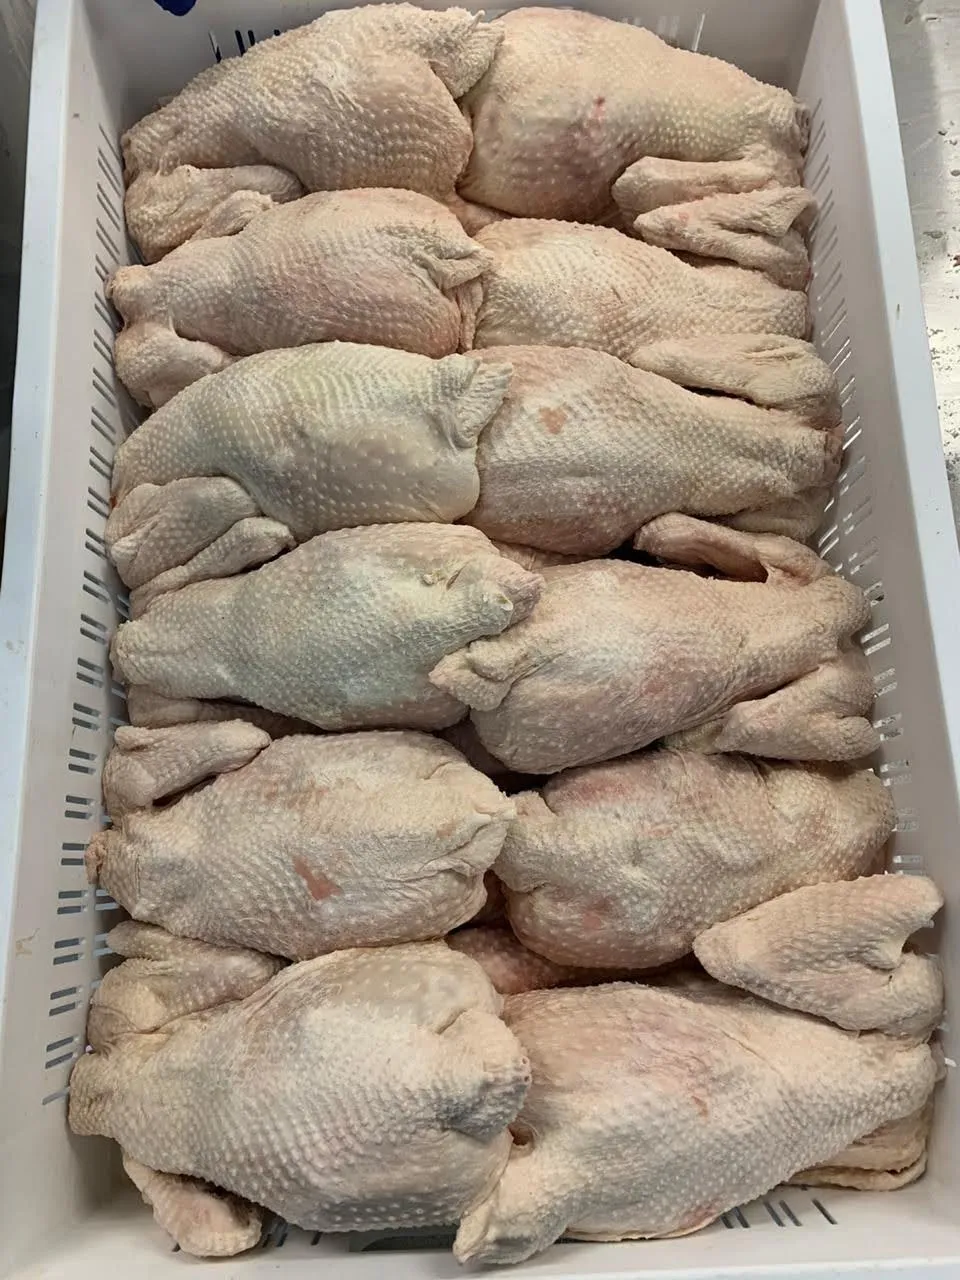 курица несушка (суповая) 1 сорт в Казани и Республике Татарстан